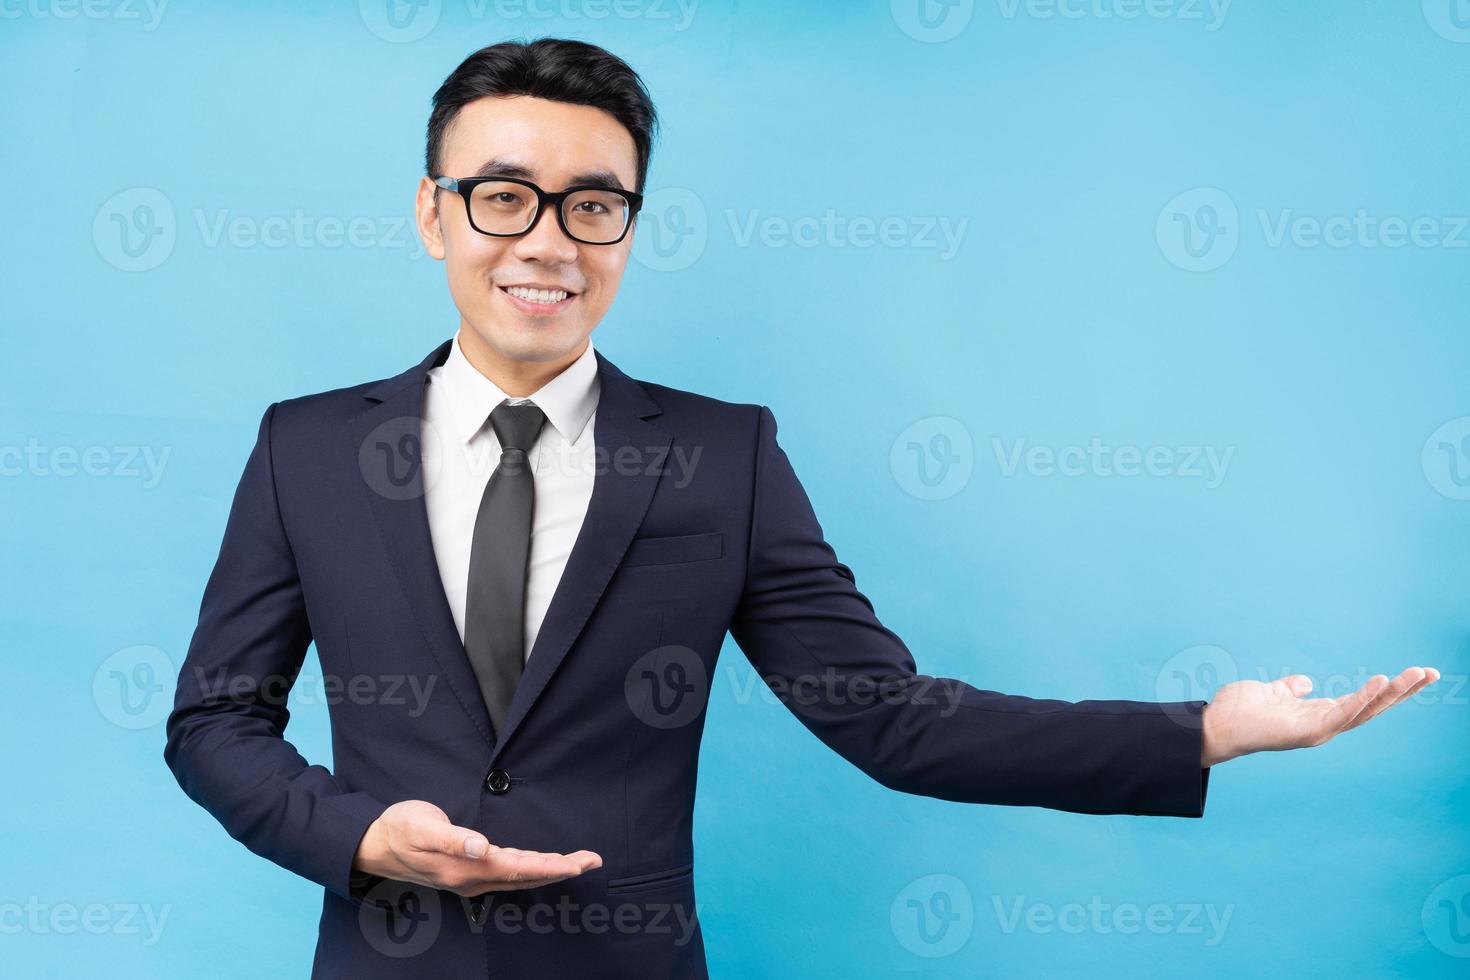 Portrait d'un homme d'affaires asiatique portant un costume sur fond bleu photo